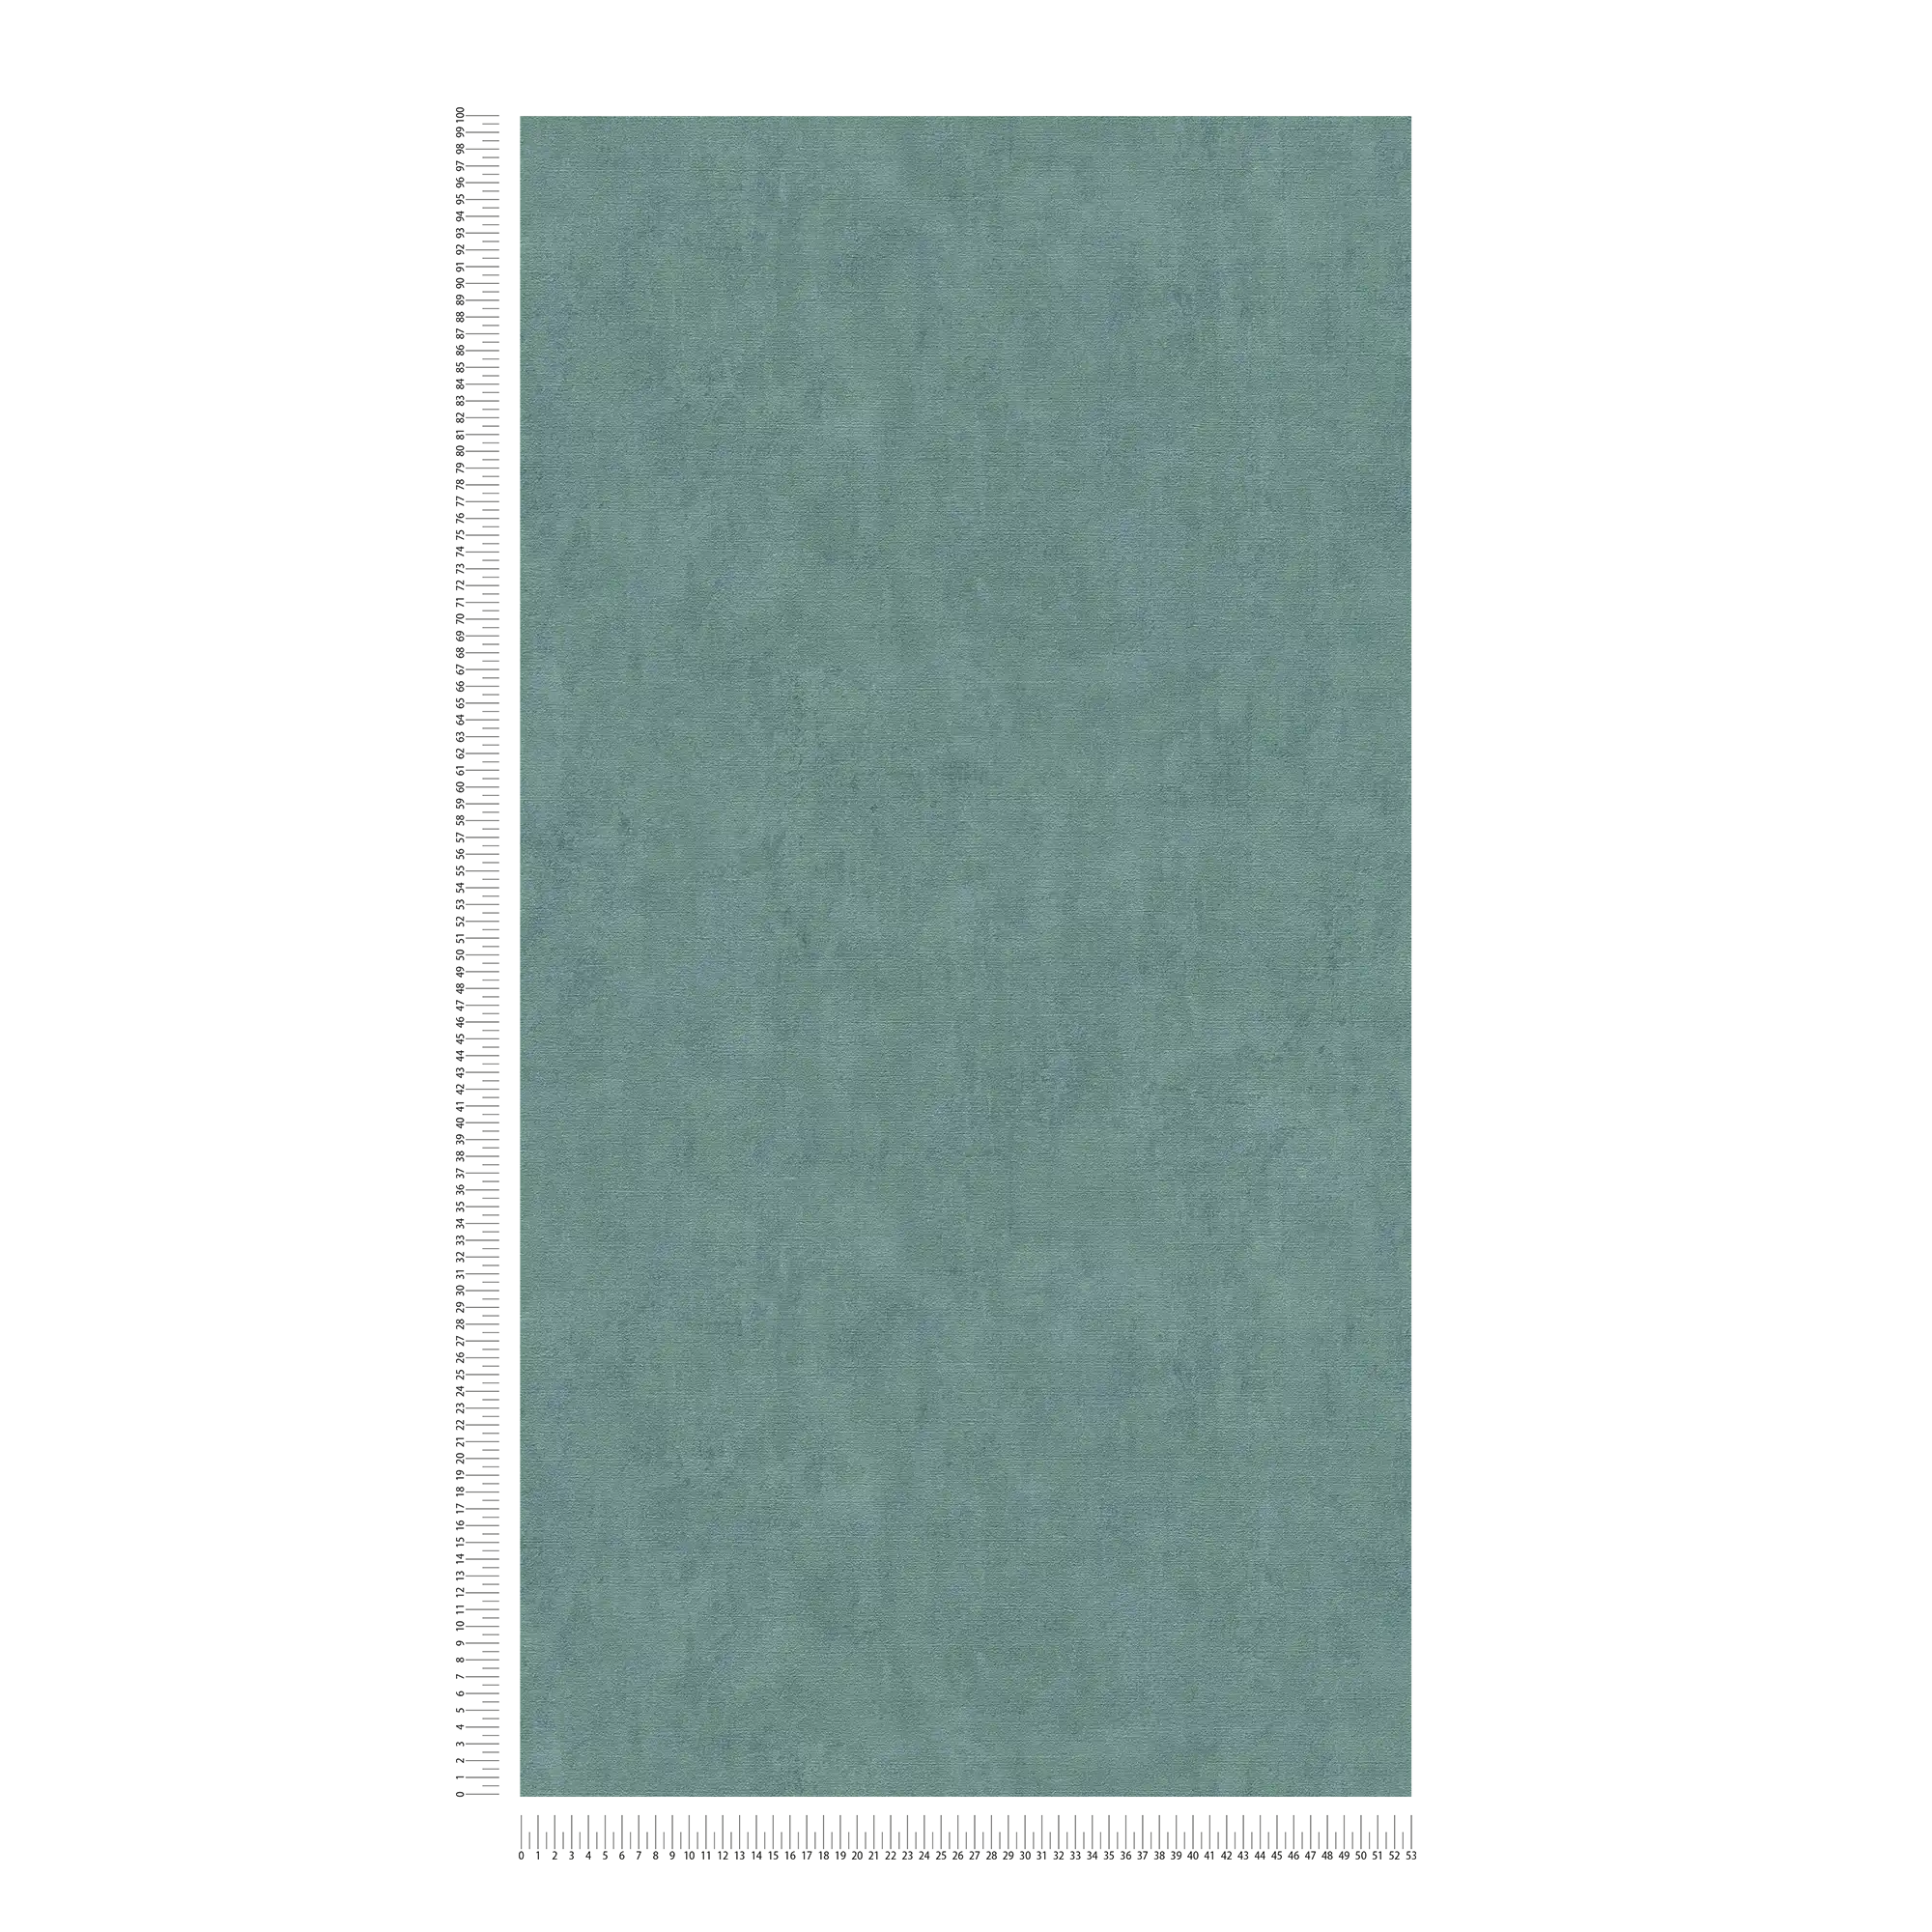             Papel pintado liso con acentos verdes moteados - Azul, Verde
        